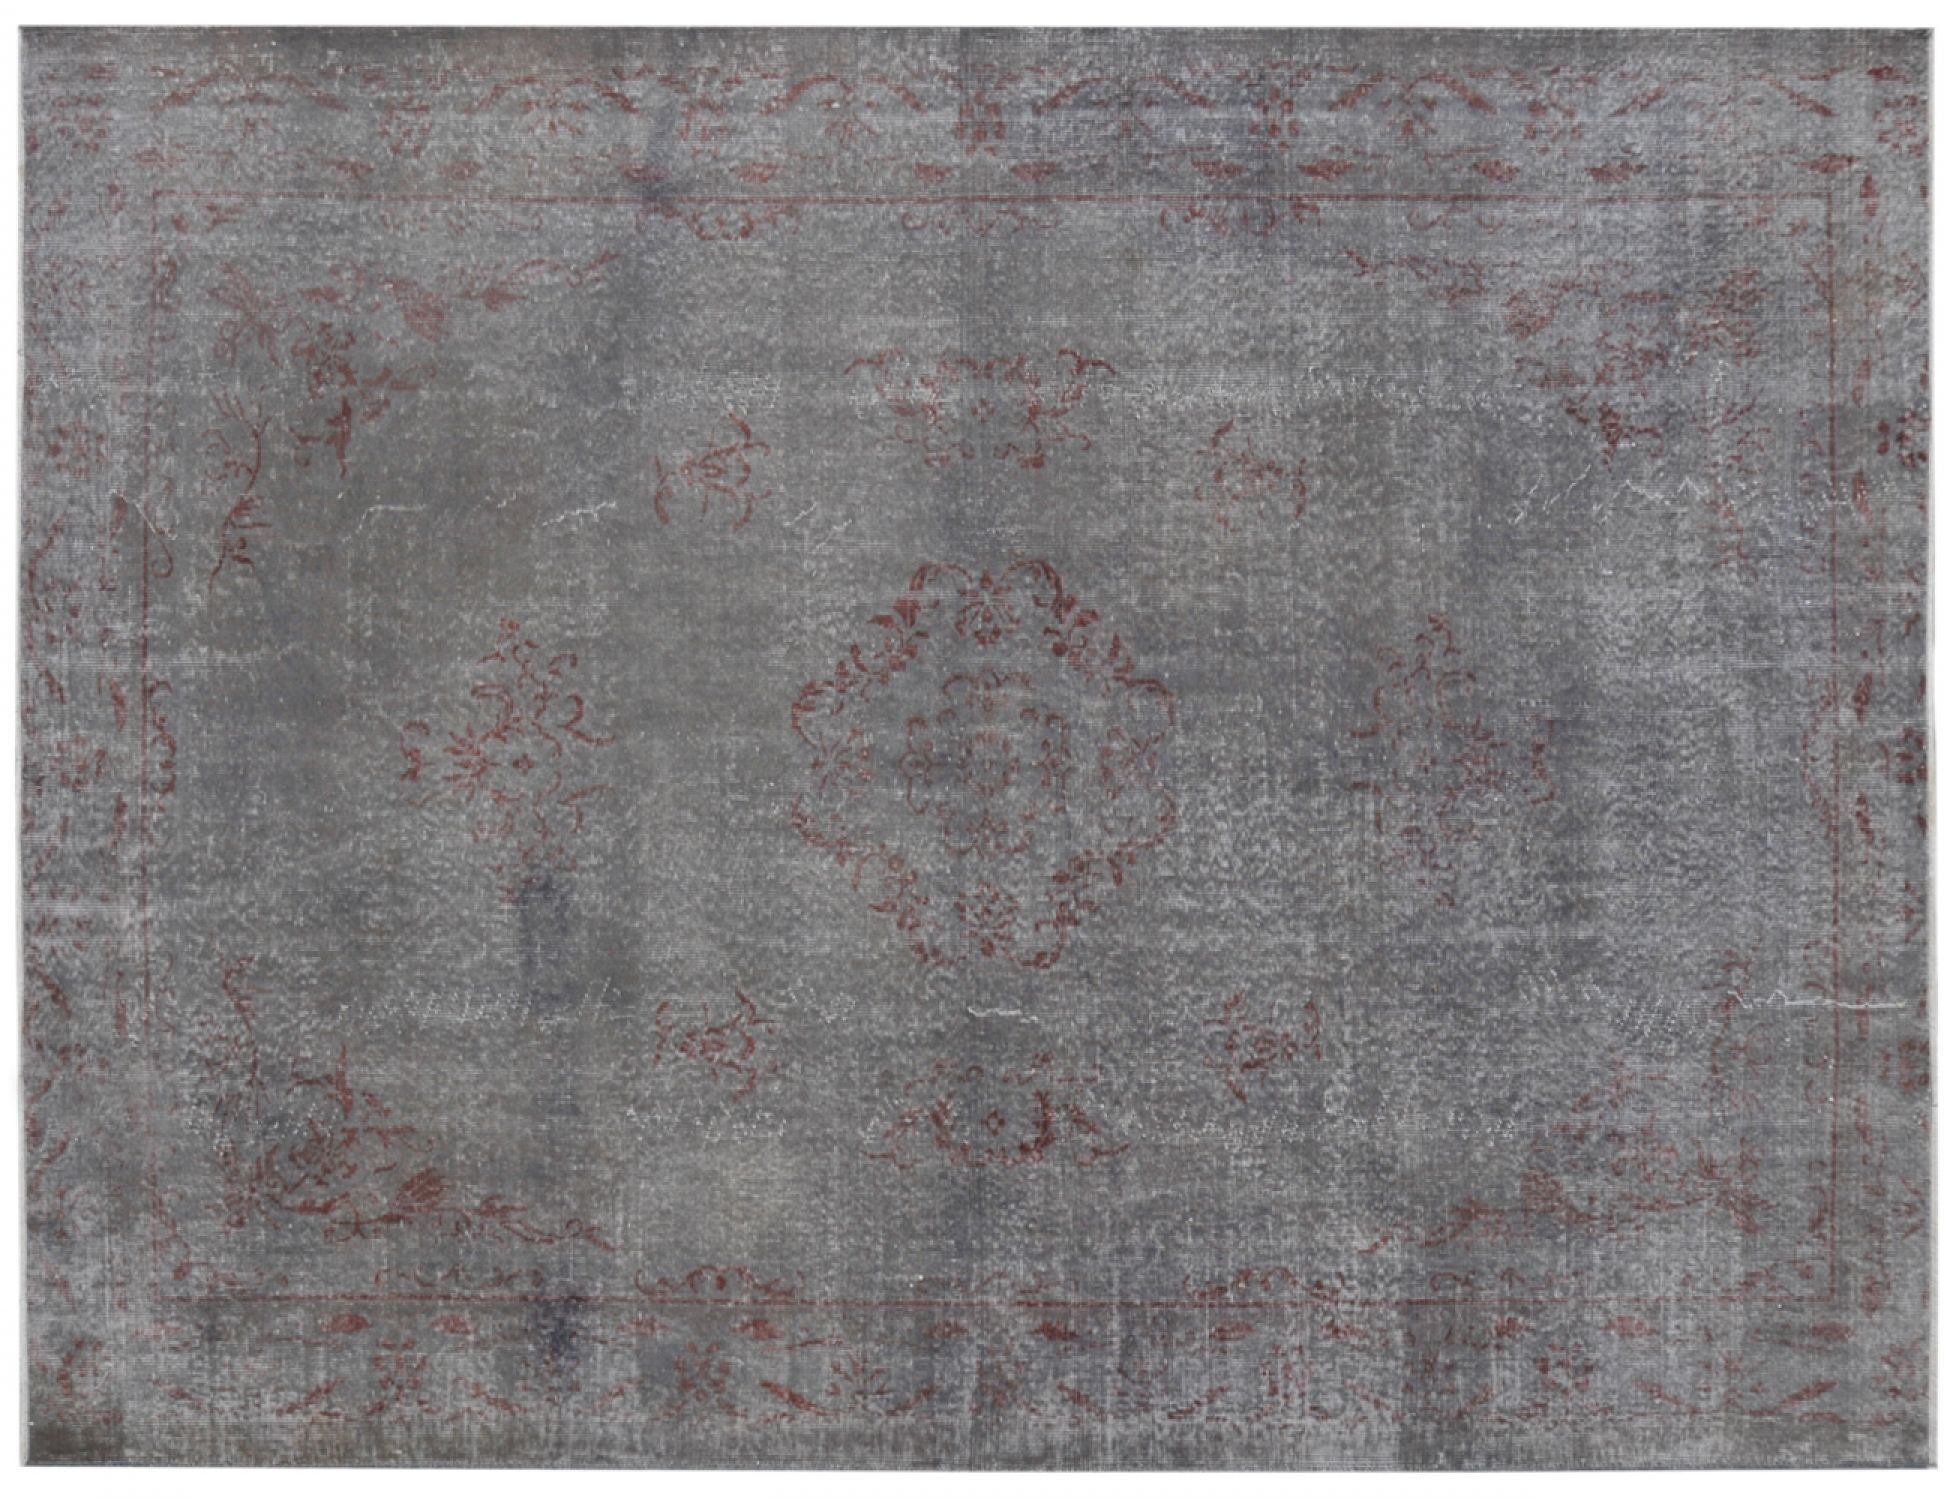  Vintage Tapis  grise <br/>286 x 205 cm